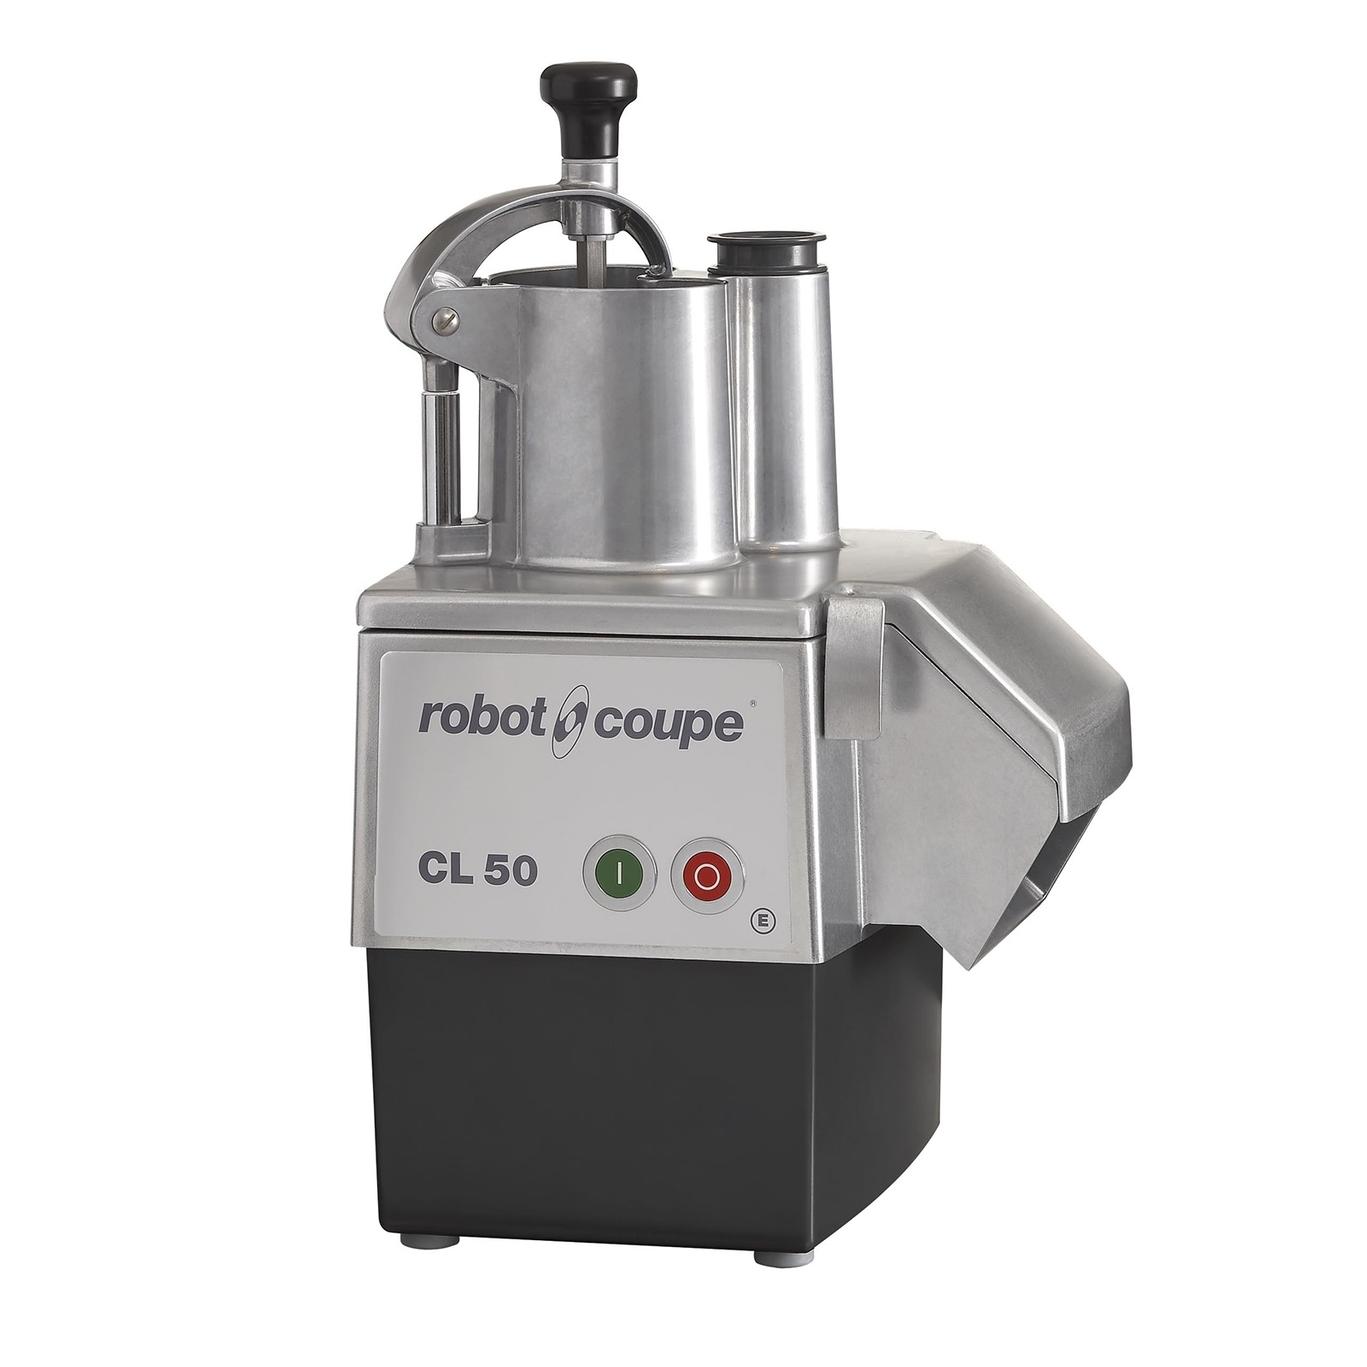 Robot Coupe CL50E - Item 129973